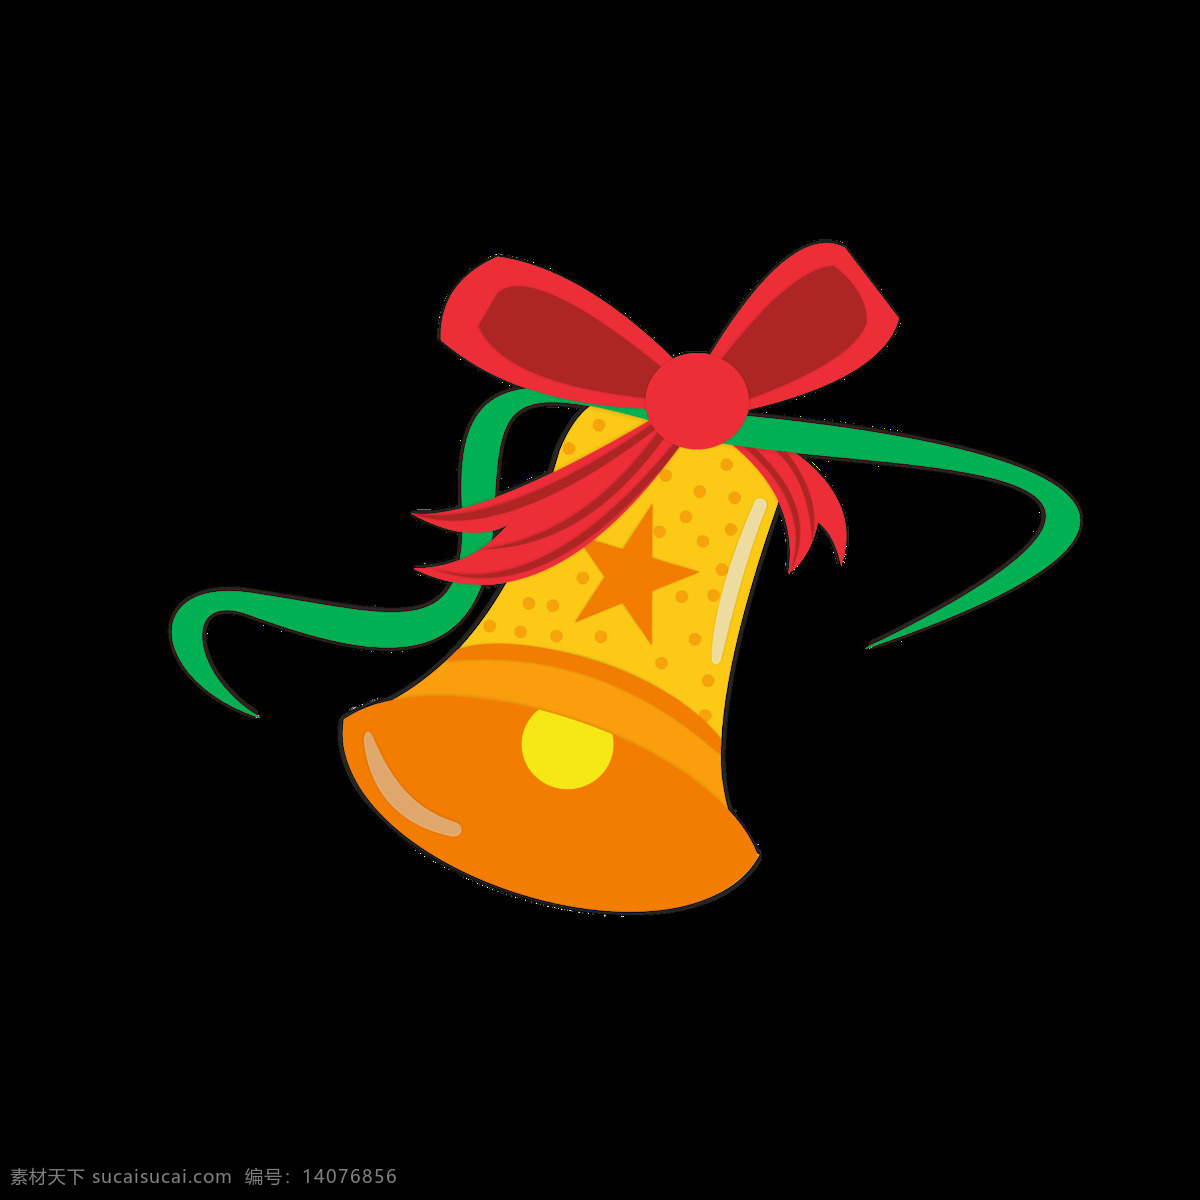 圣诞节 铃铛 元素 卡通 可爱 黄色 节日 元素设计